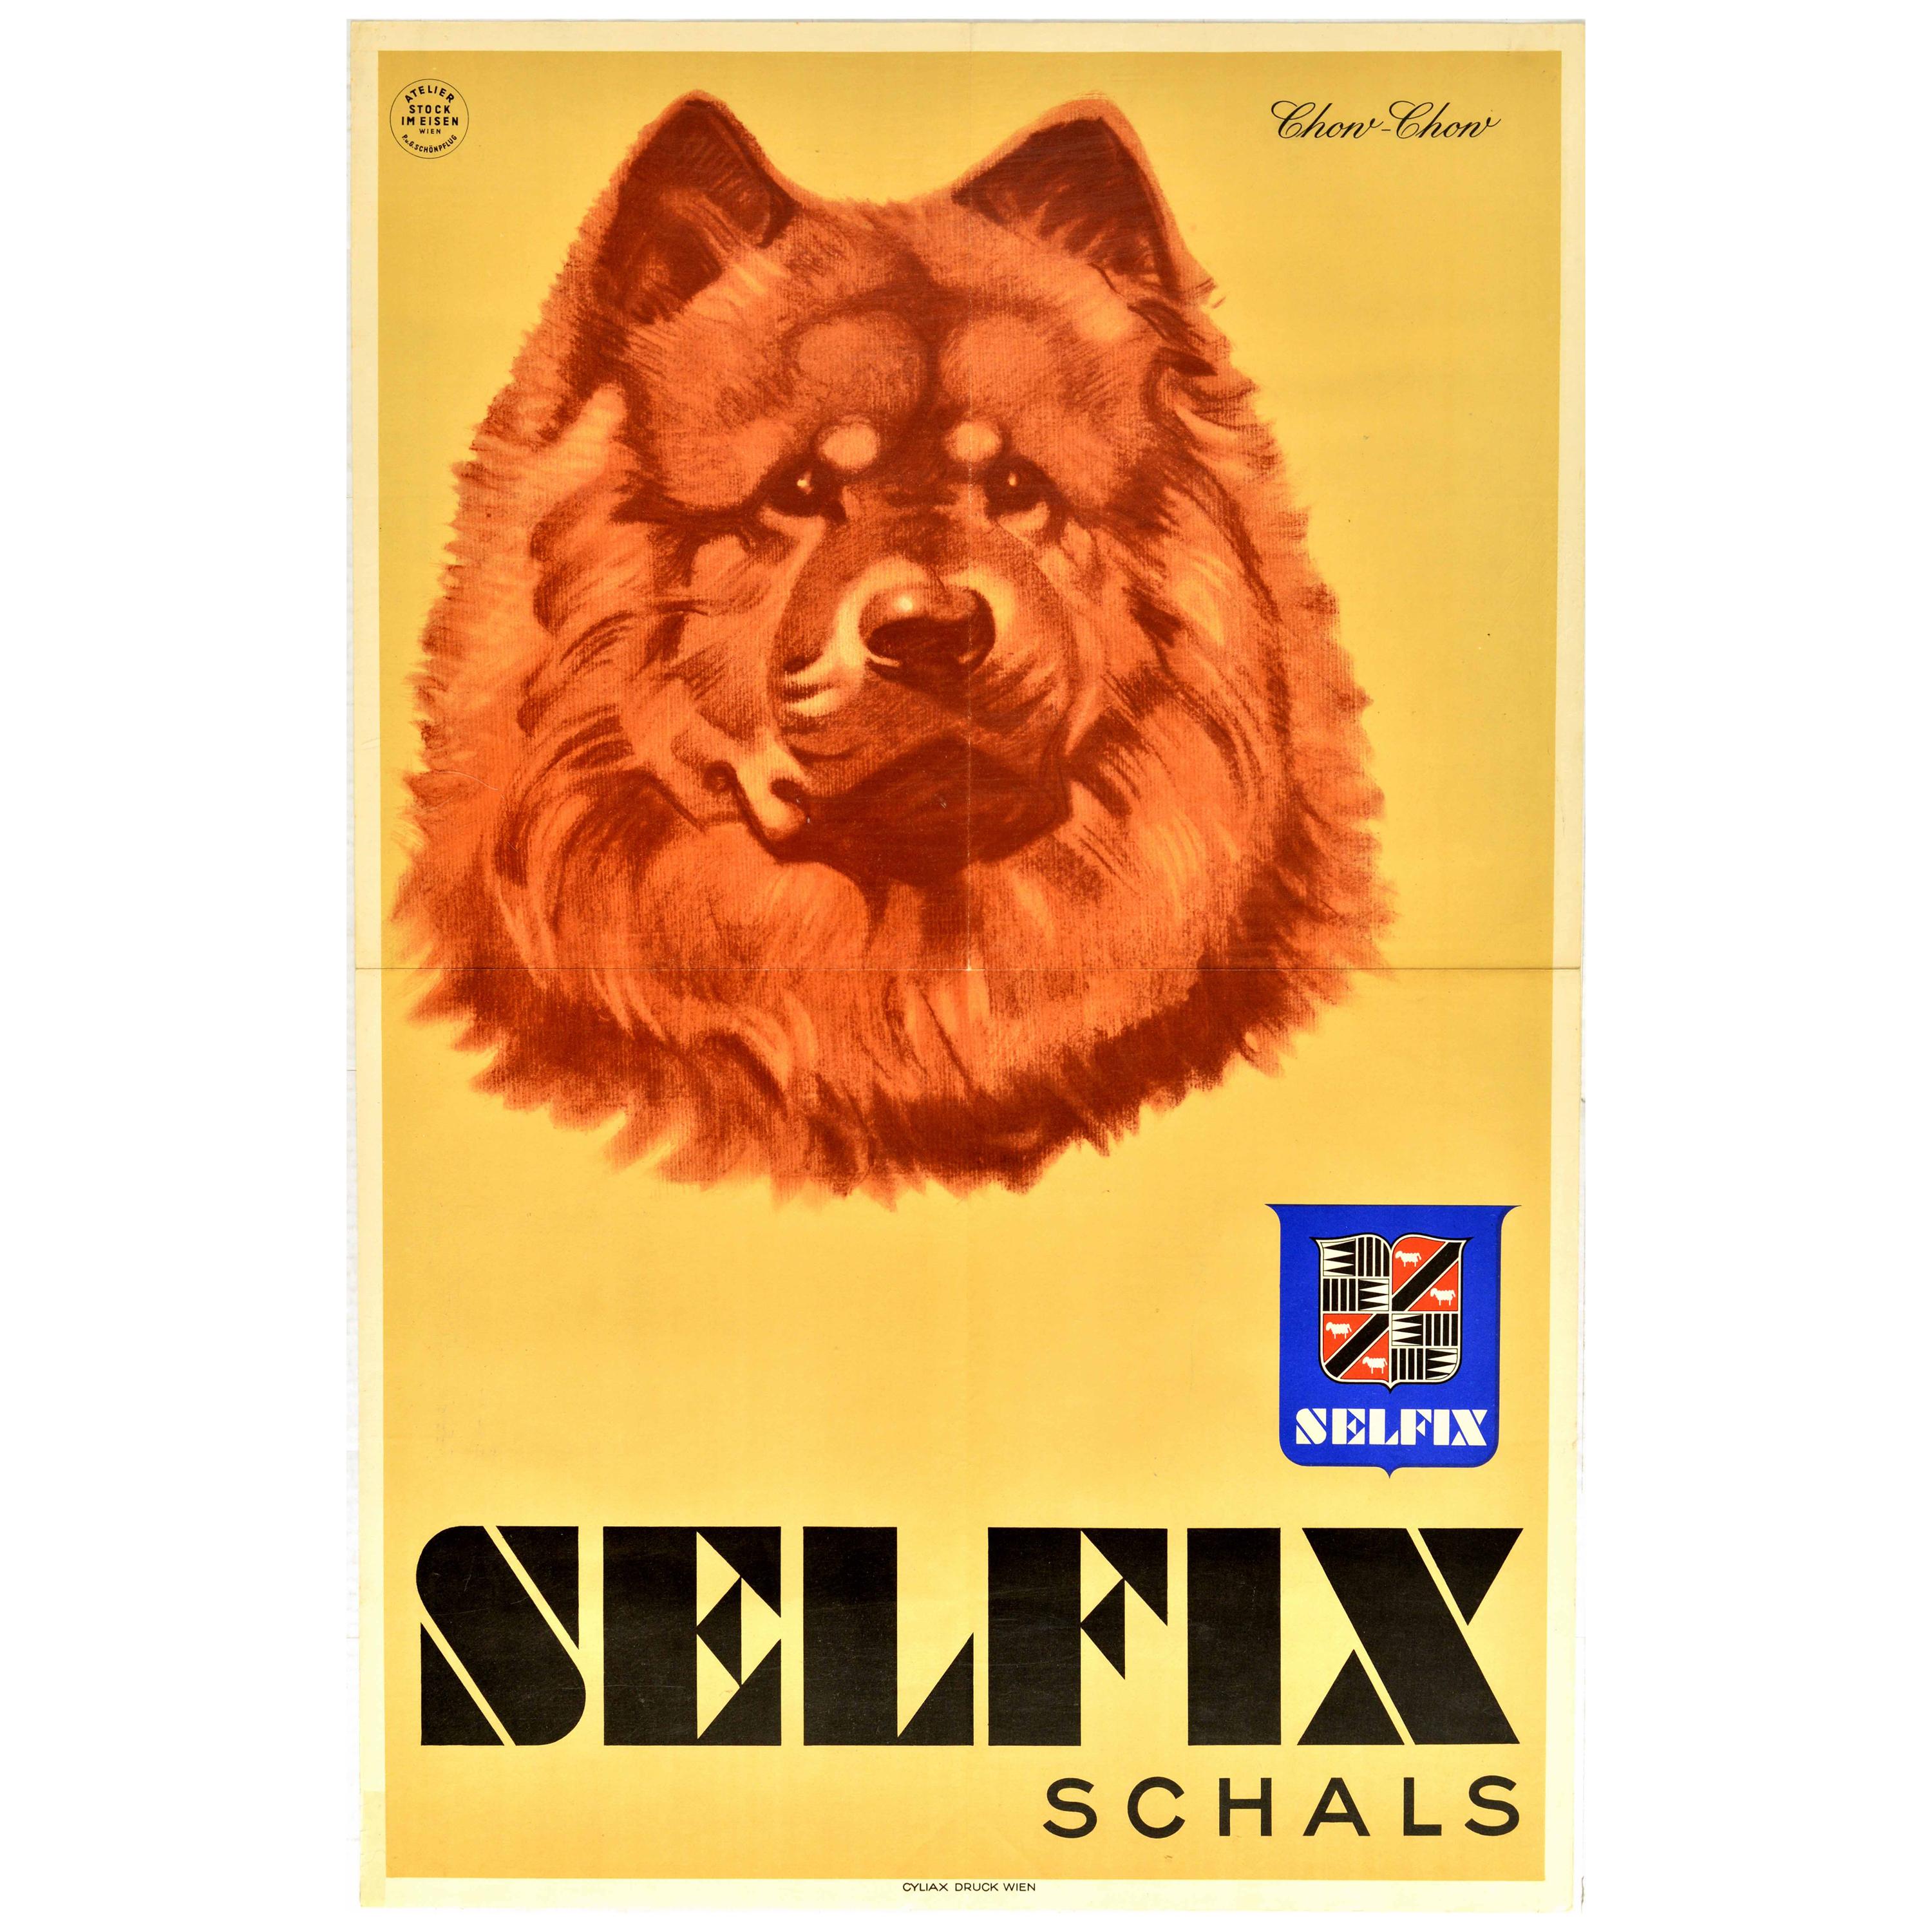 Affiche publicitaire vintage originale, Selfix Schals, dessin d'un chow-chow